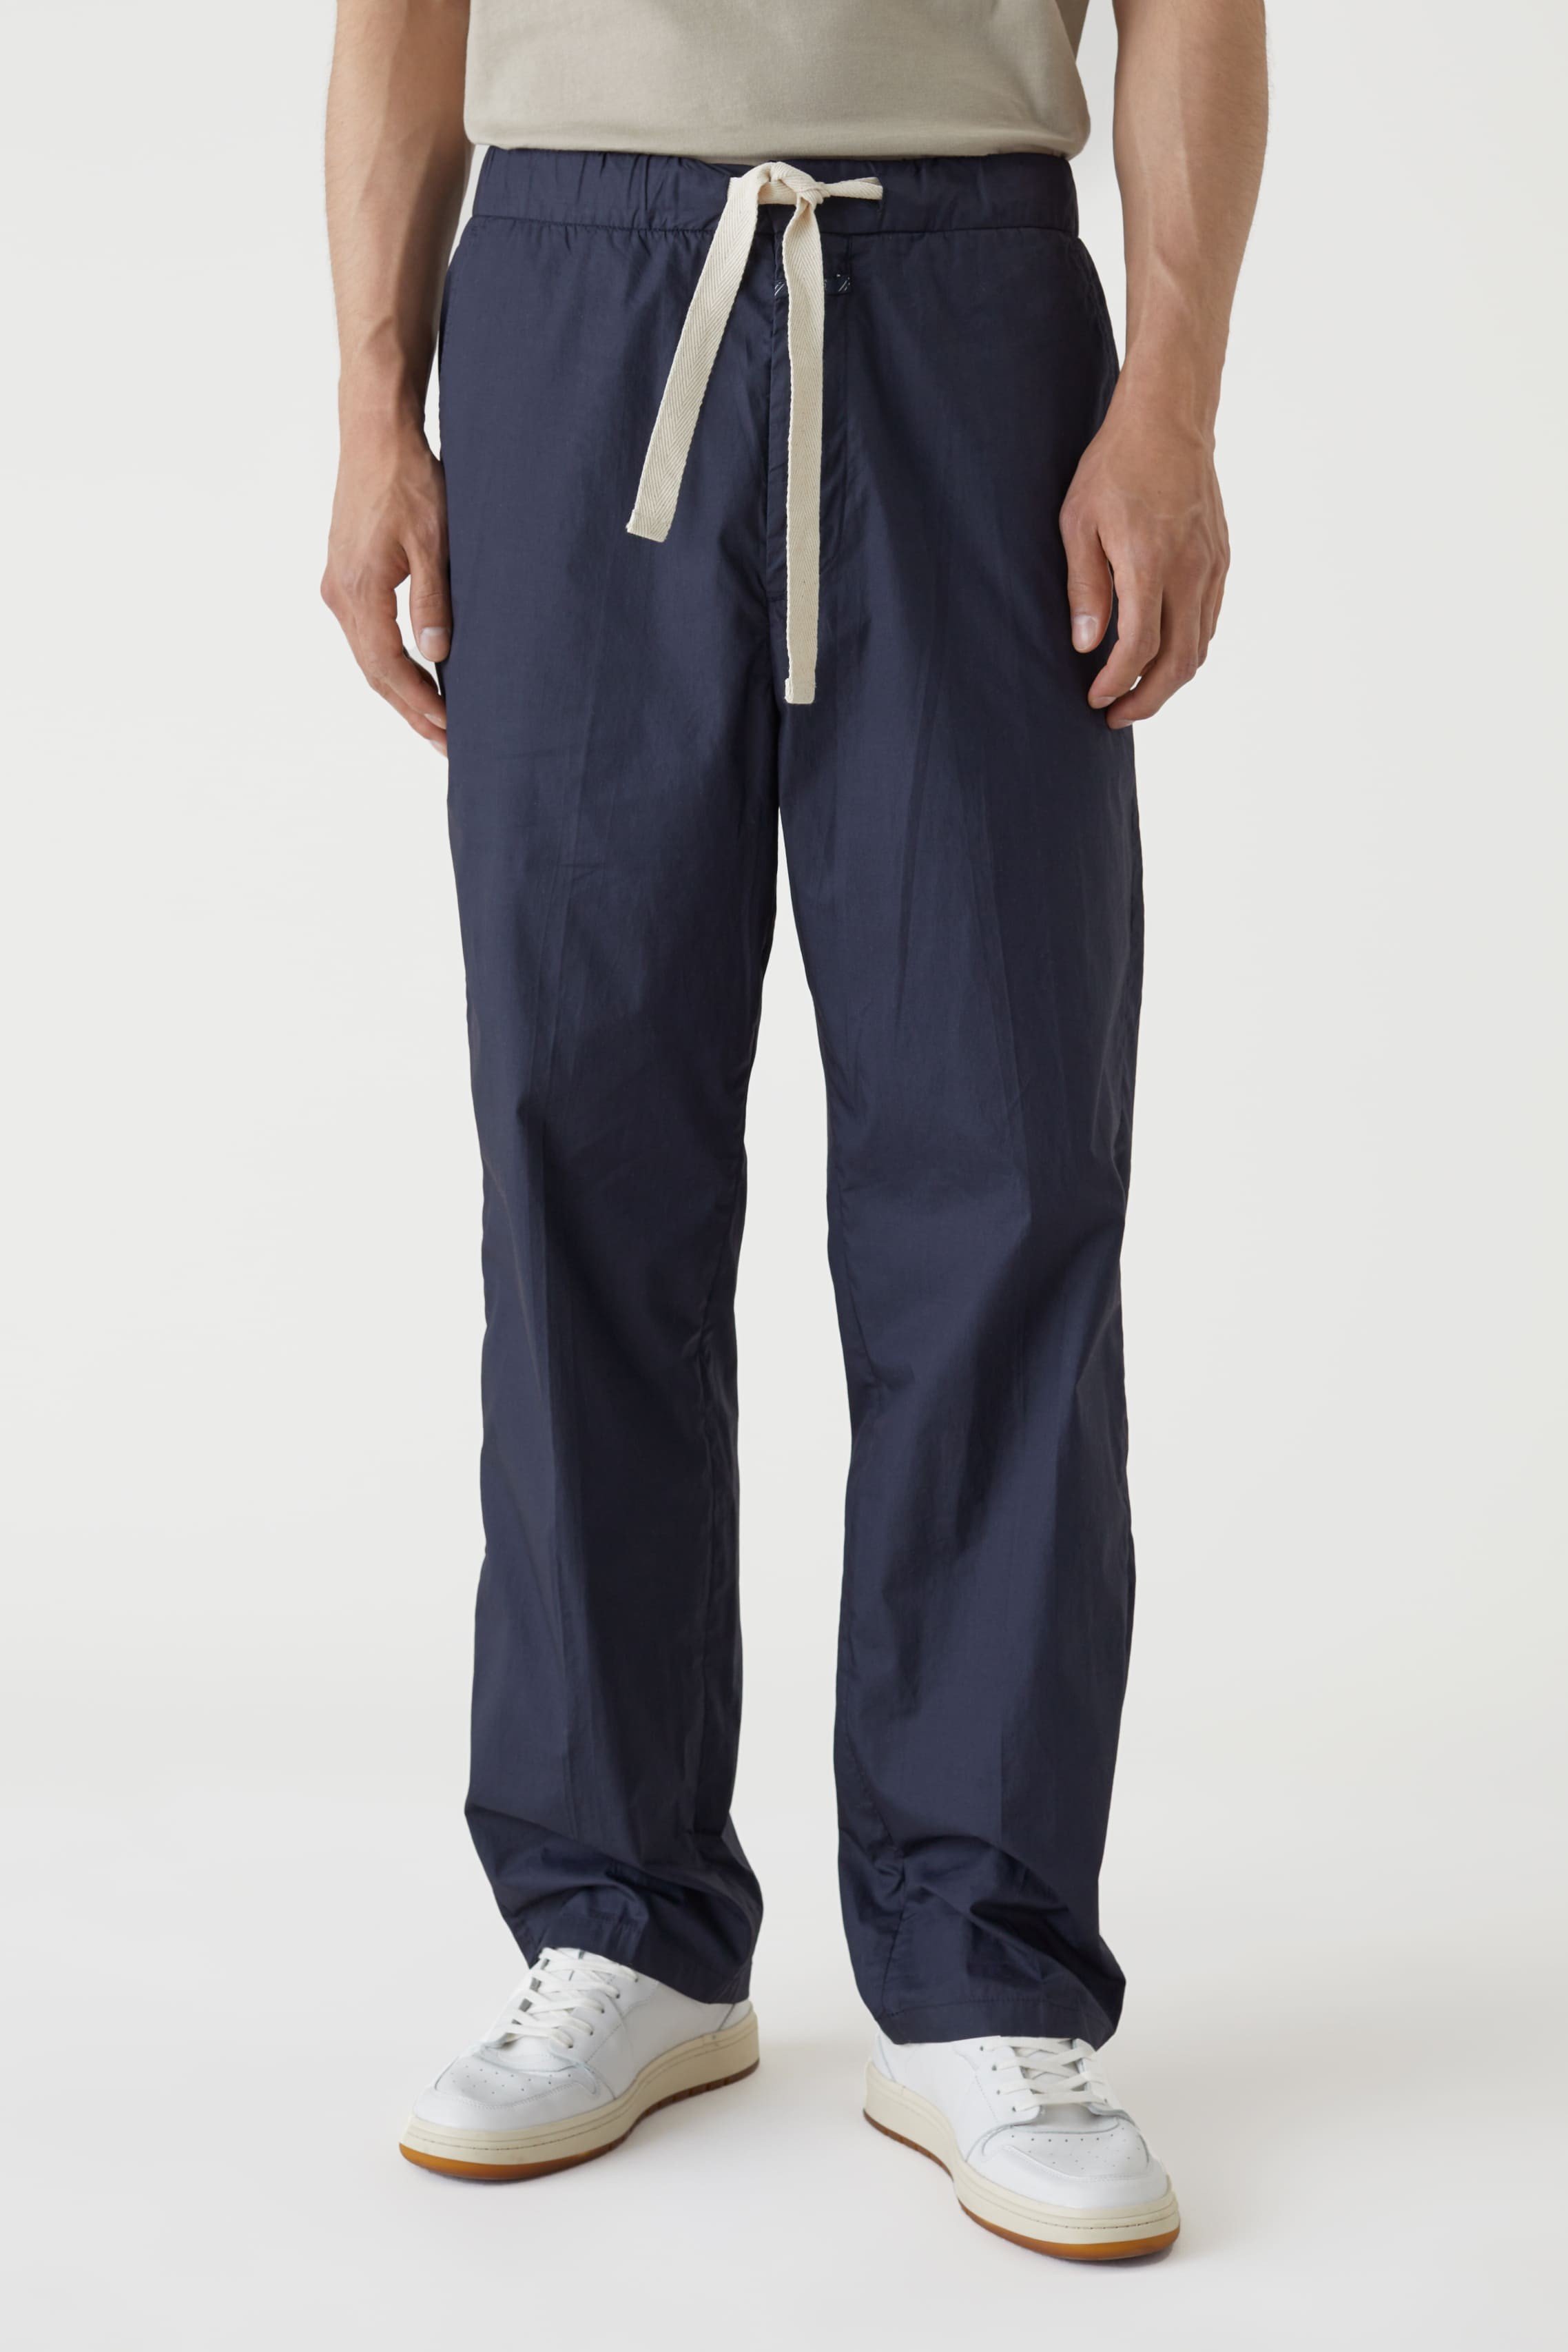 CLOSED Closed - Pantalon Nanaimo Straight - Popeline Coton Bio - Bleu Dark Night